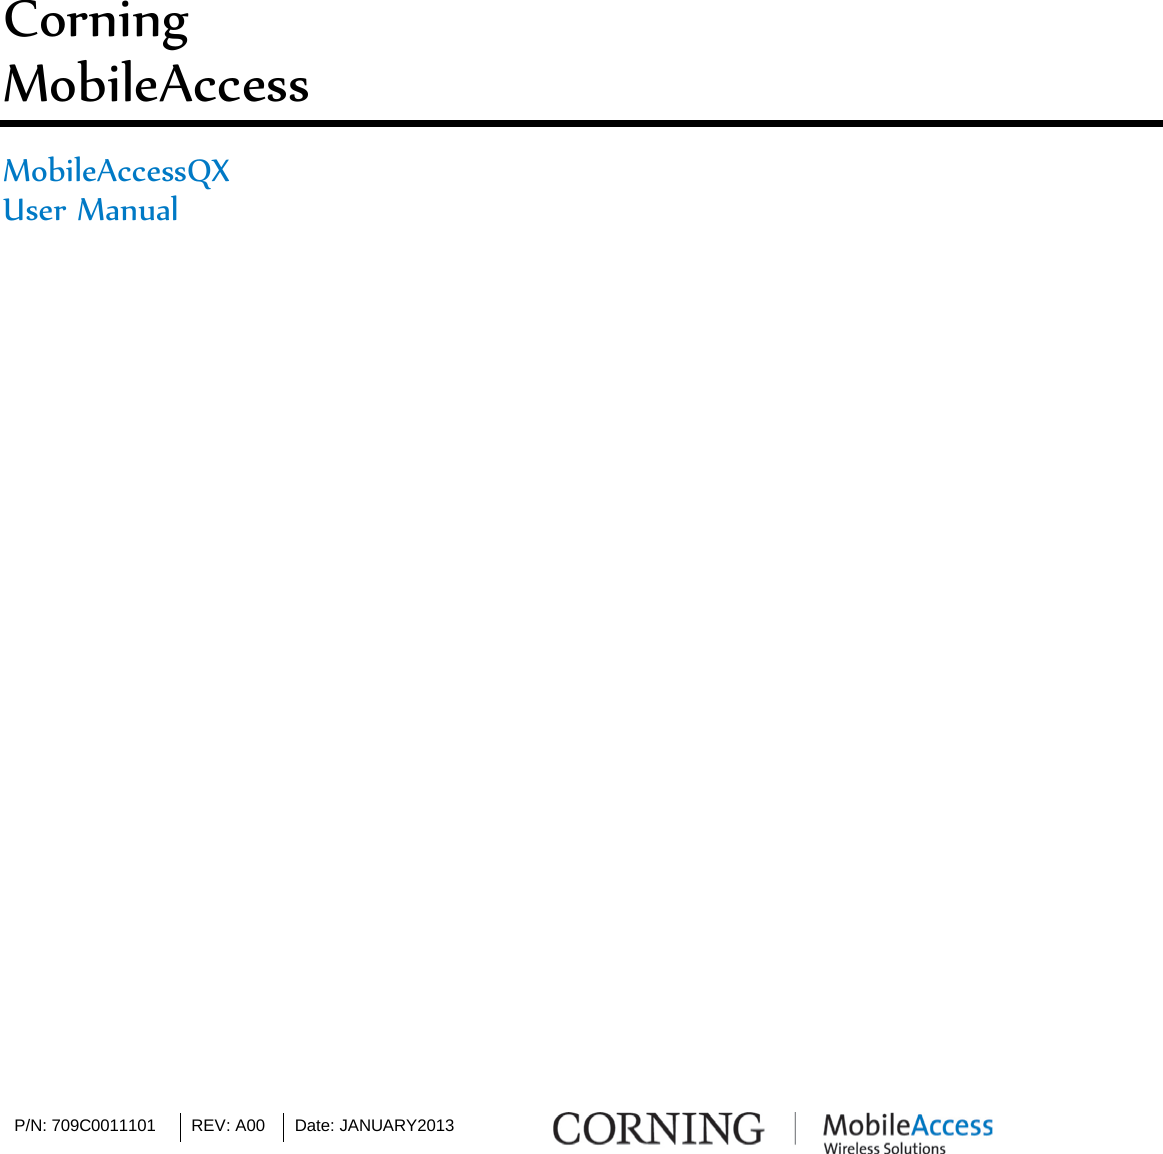 P/N: 709C0011101 REV: A00 Date: JANUARY2013       Corning  MobileAccess  MobileAccessQX User Manual                                  